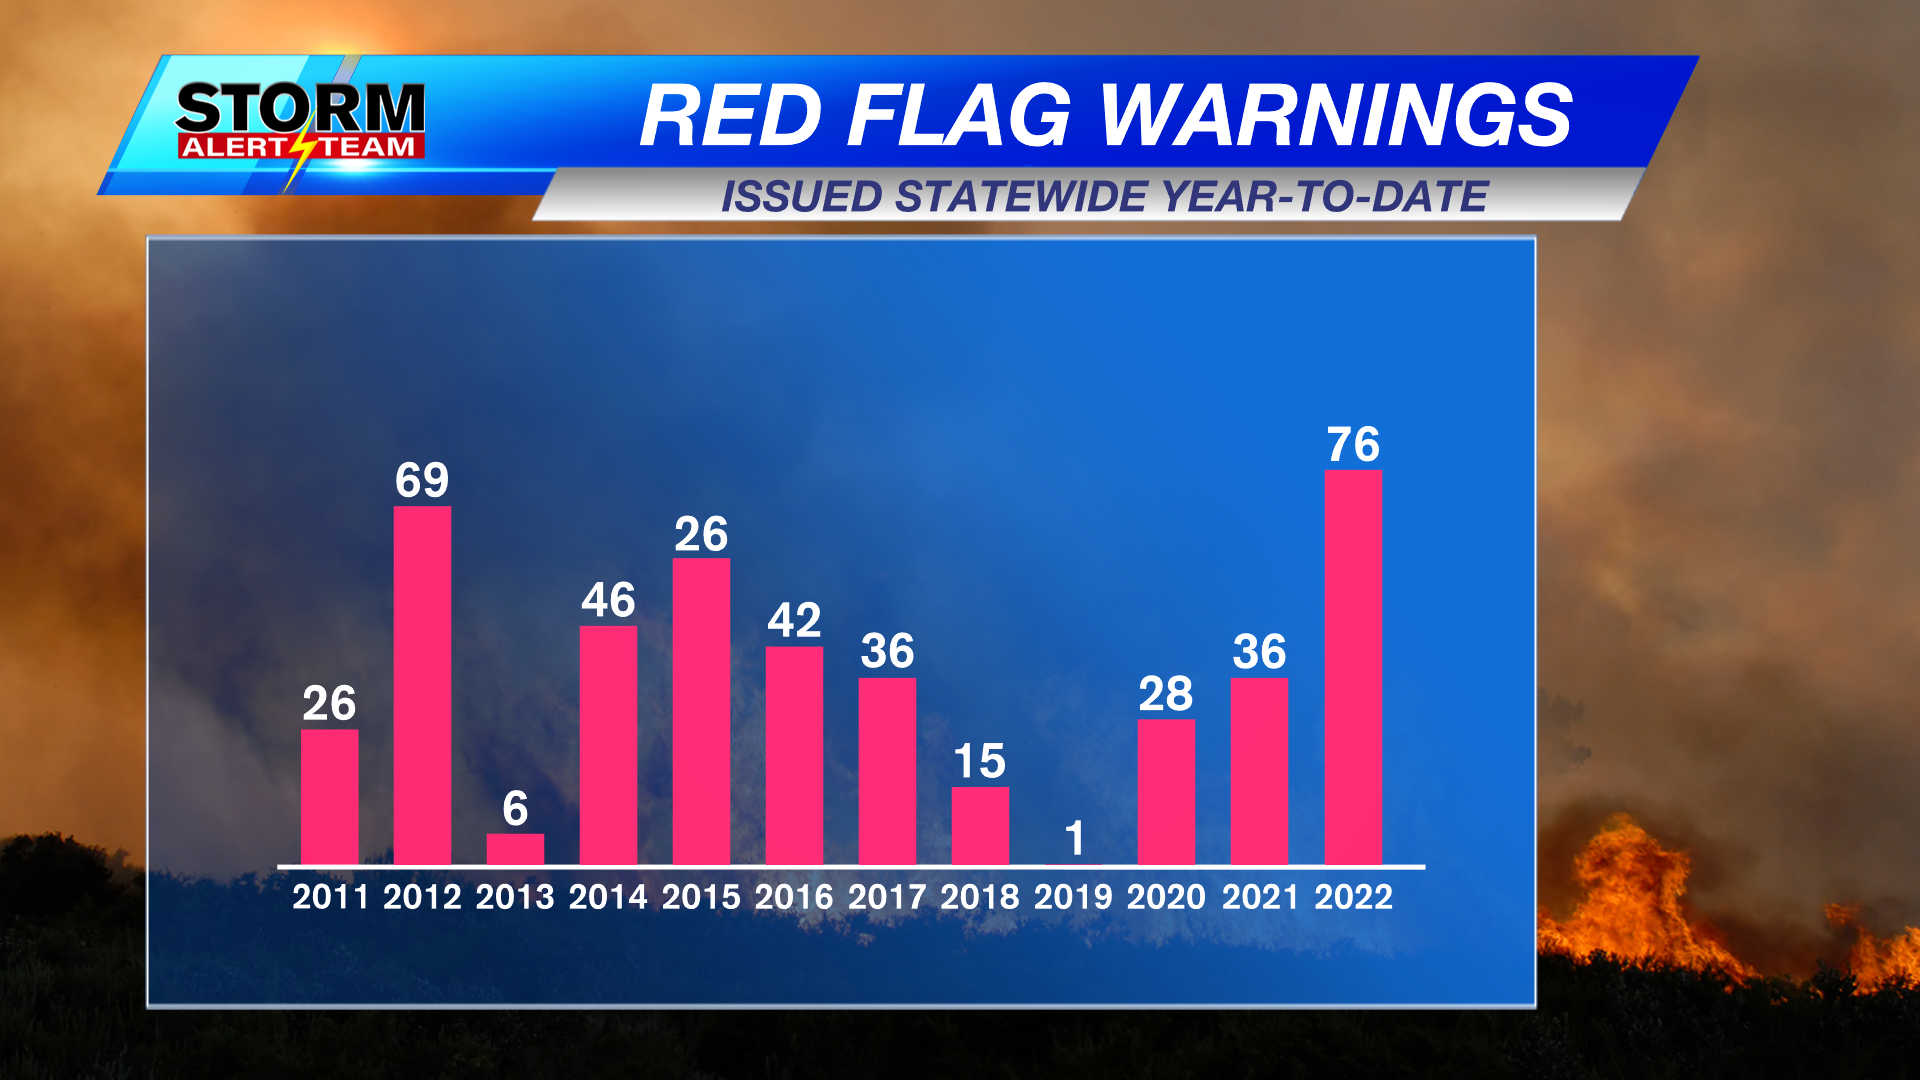 Highest number of Red Flag Warnings Nebraska in